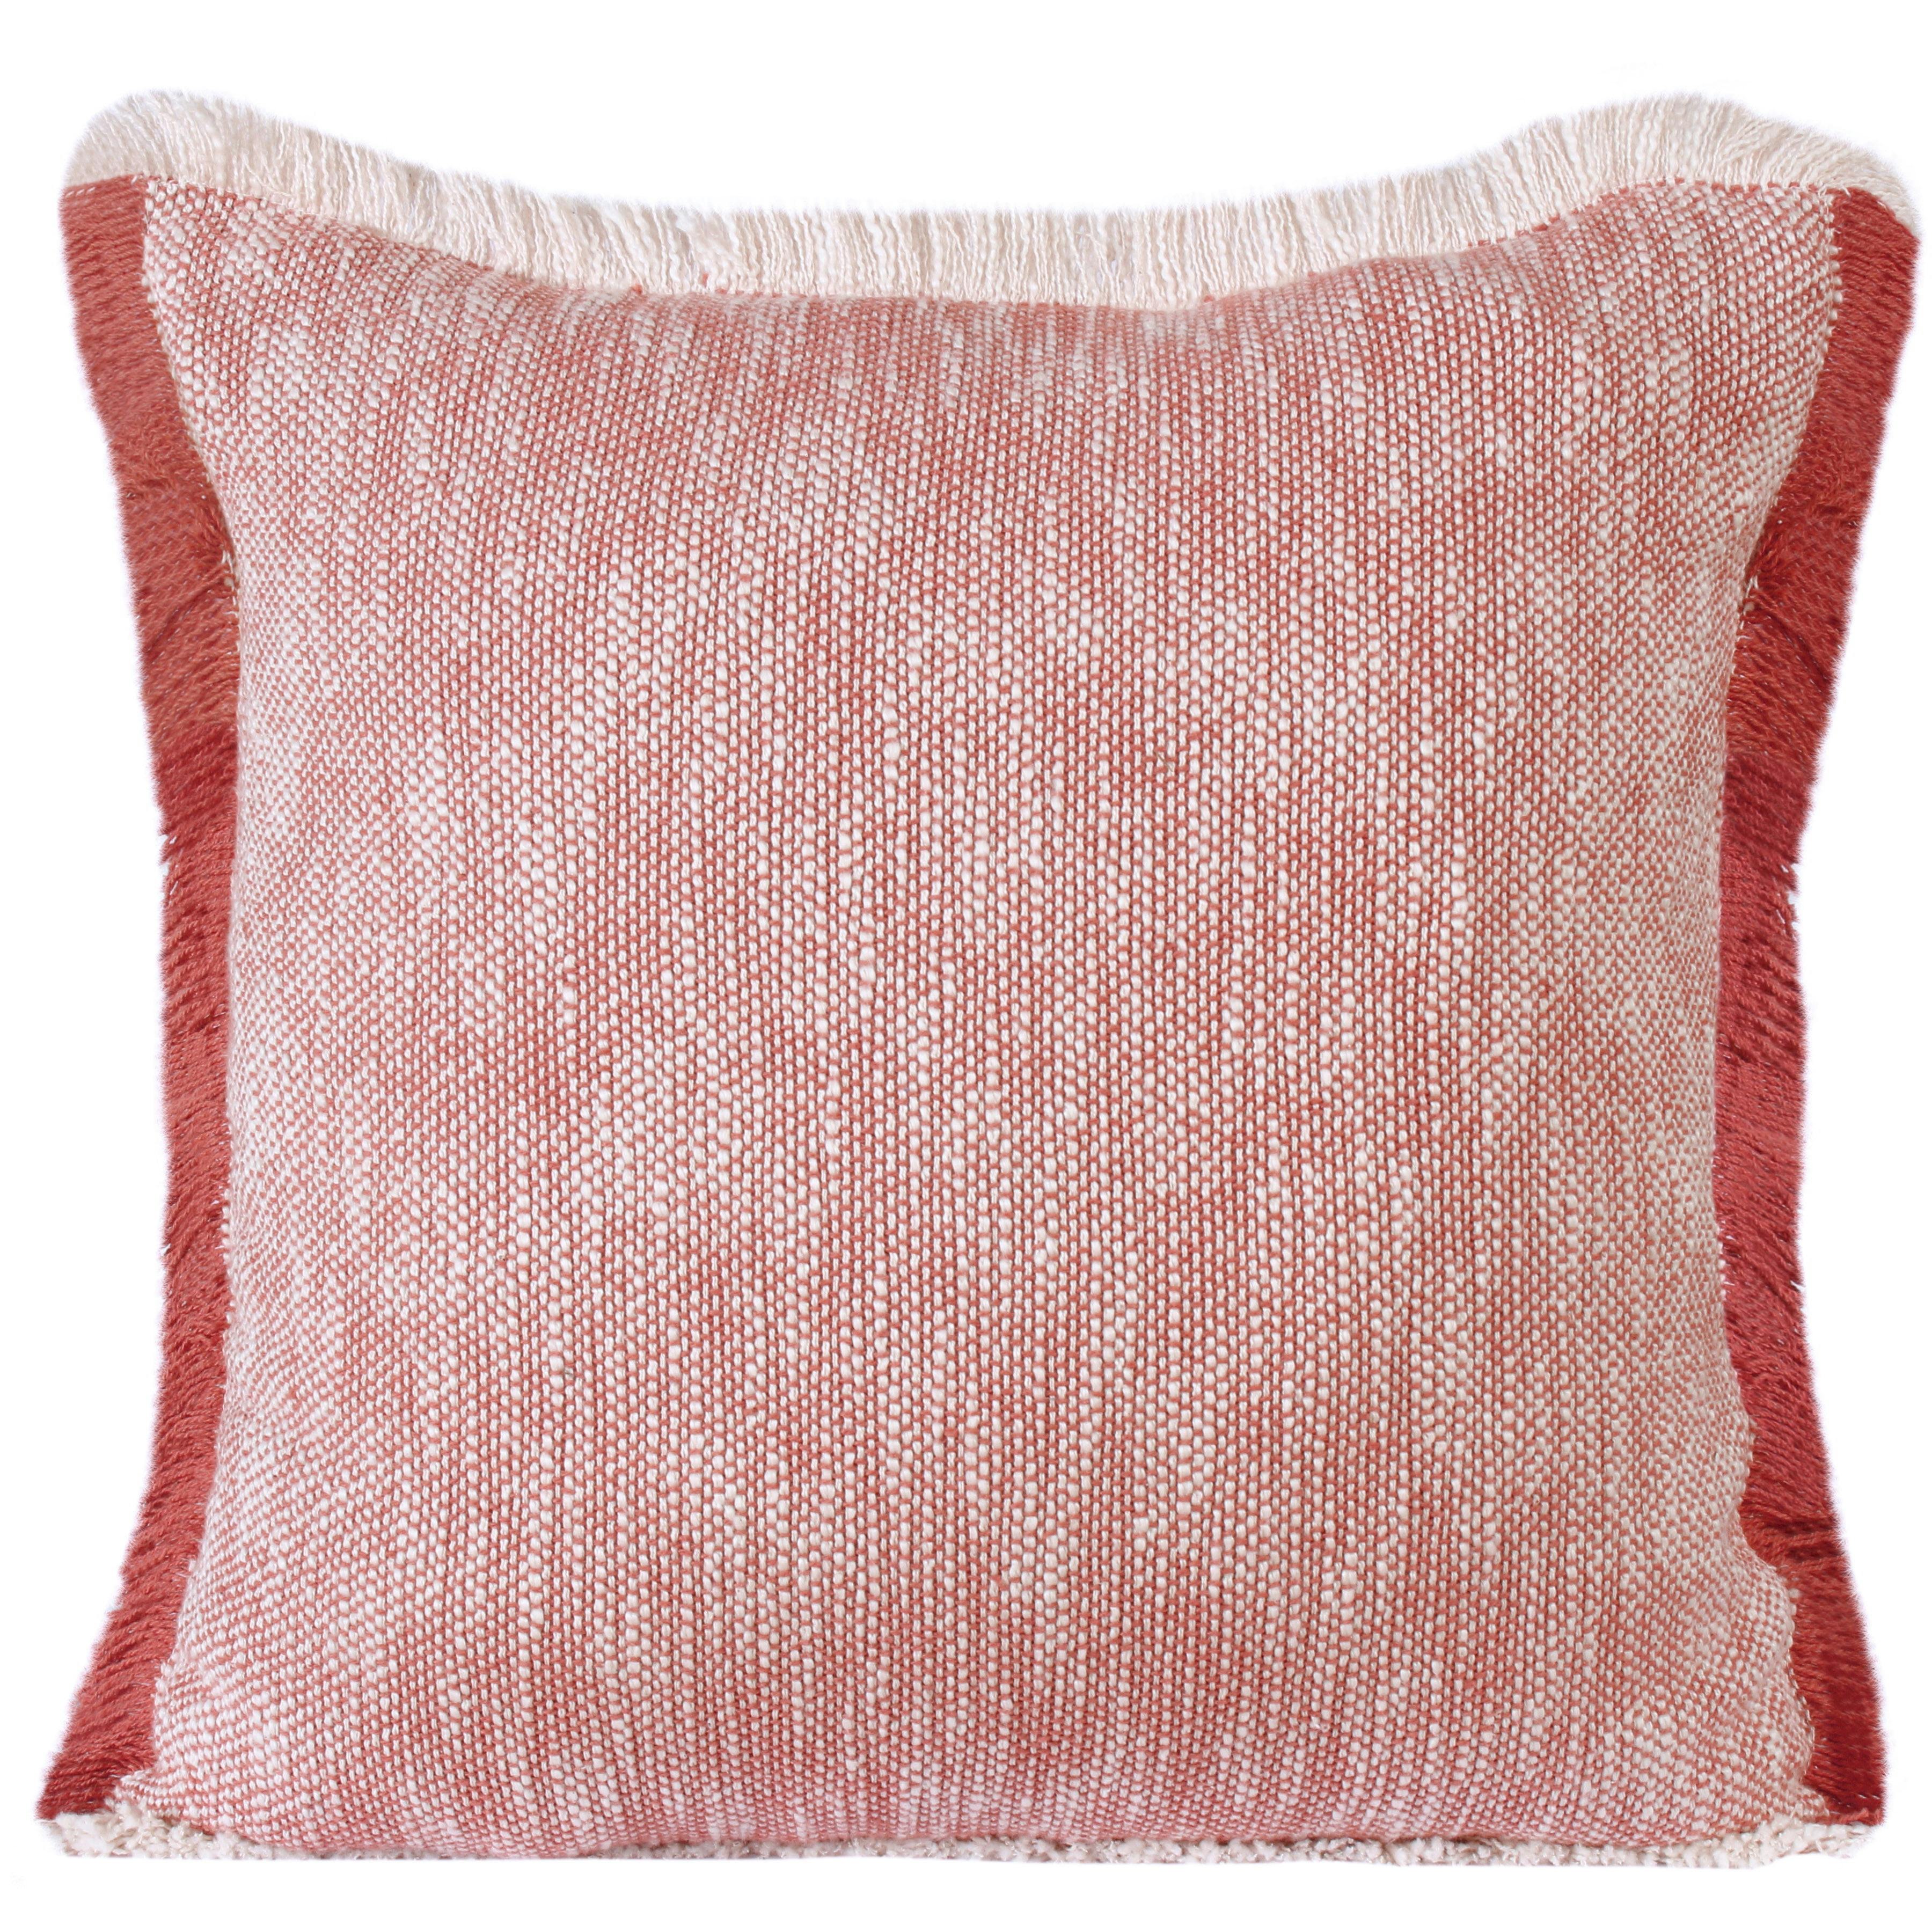 Sevita Auburn Red & White Cotton Fringe Square Throw Pillow - 20" x 20"